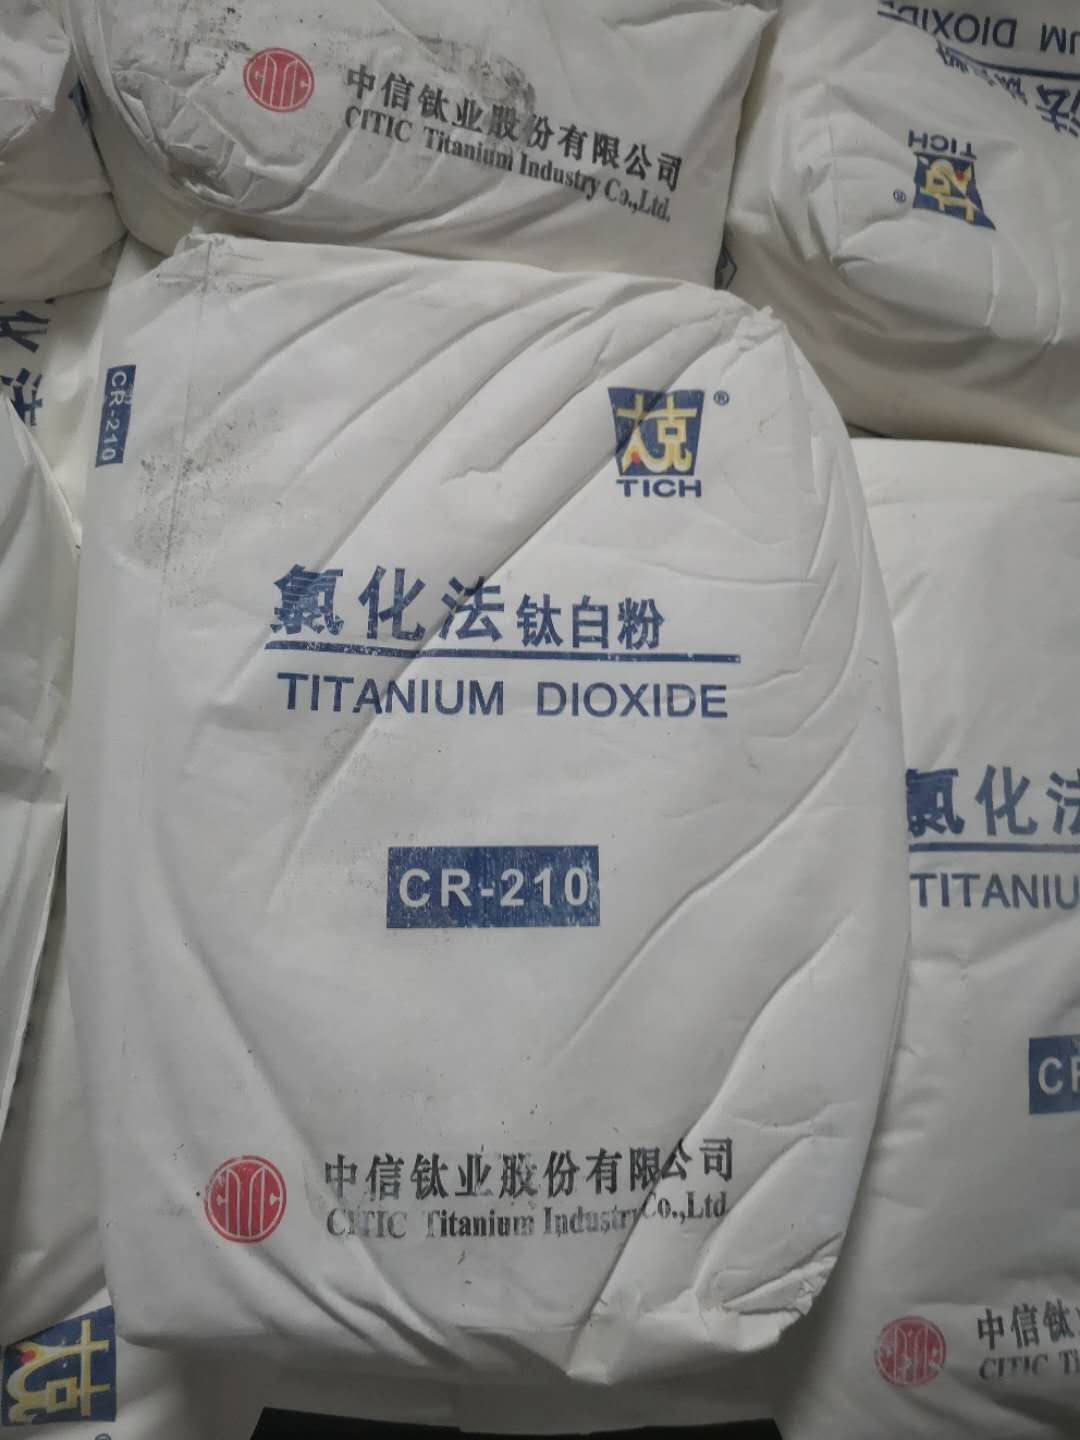 锦州太克（中信钛业）CR-210氯化法塑料/色母用钛白粉